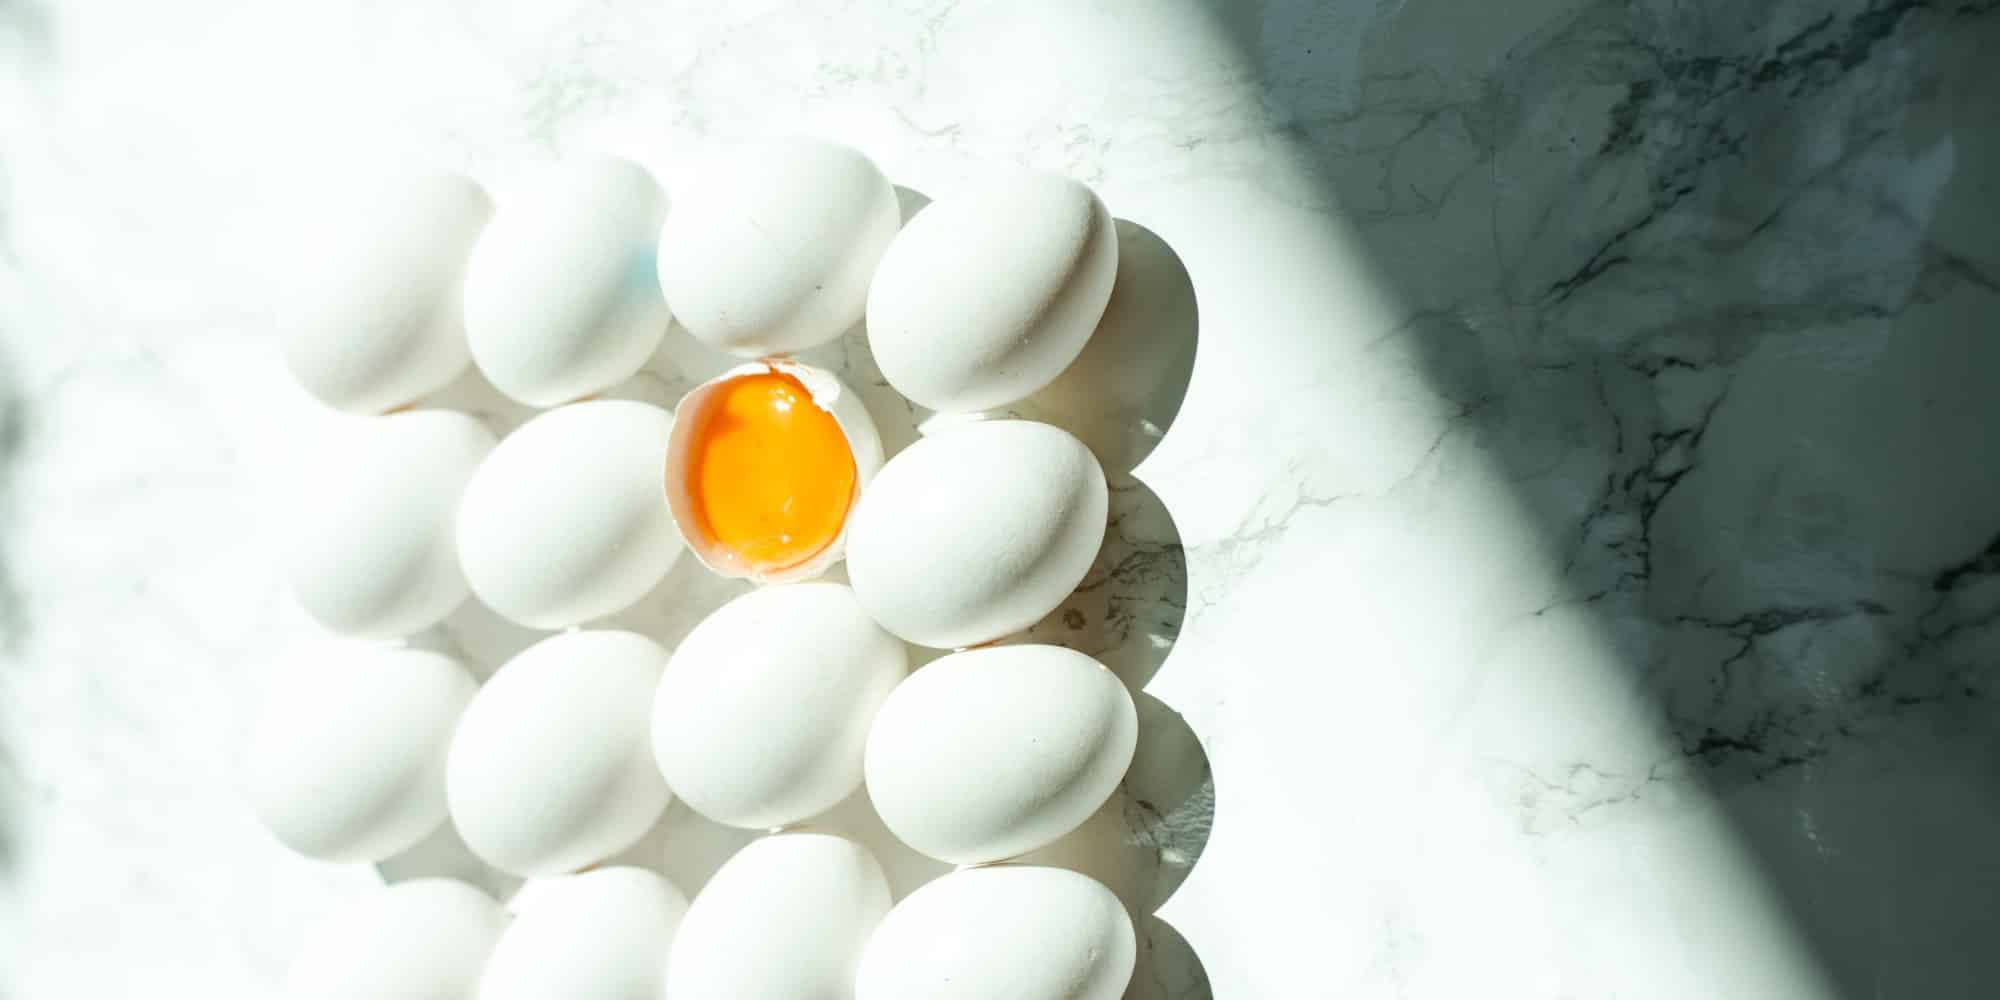 Καρτέλα Αυγών στον πάγκο της κουζίνας